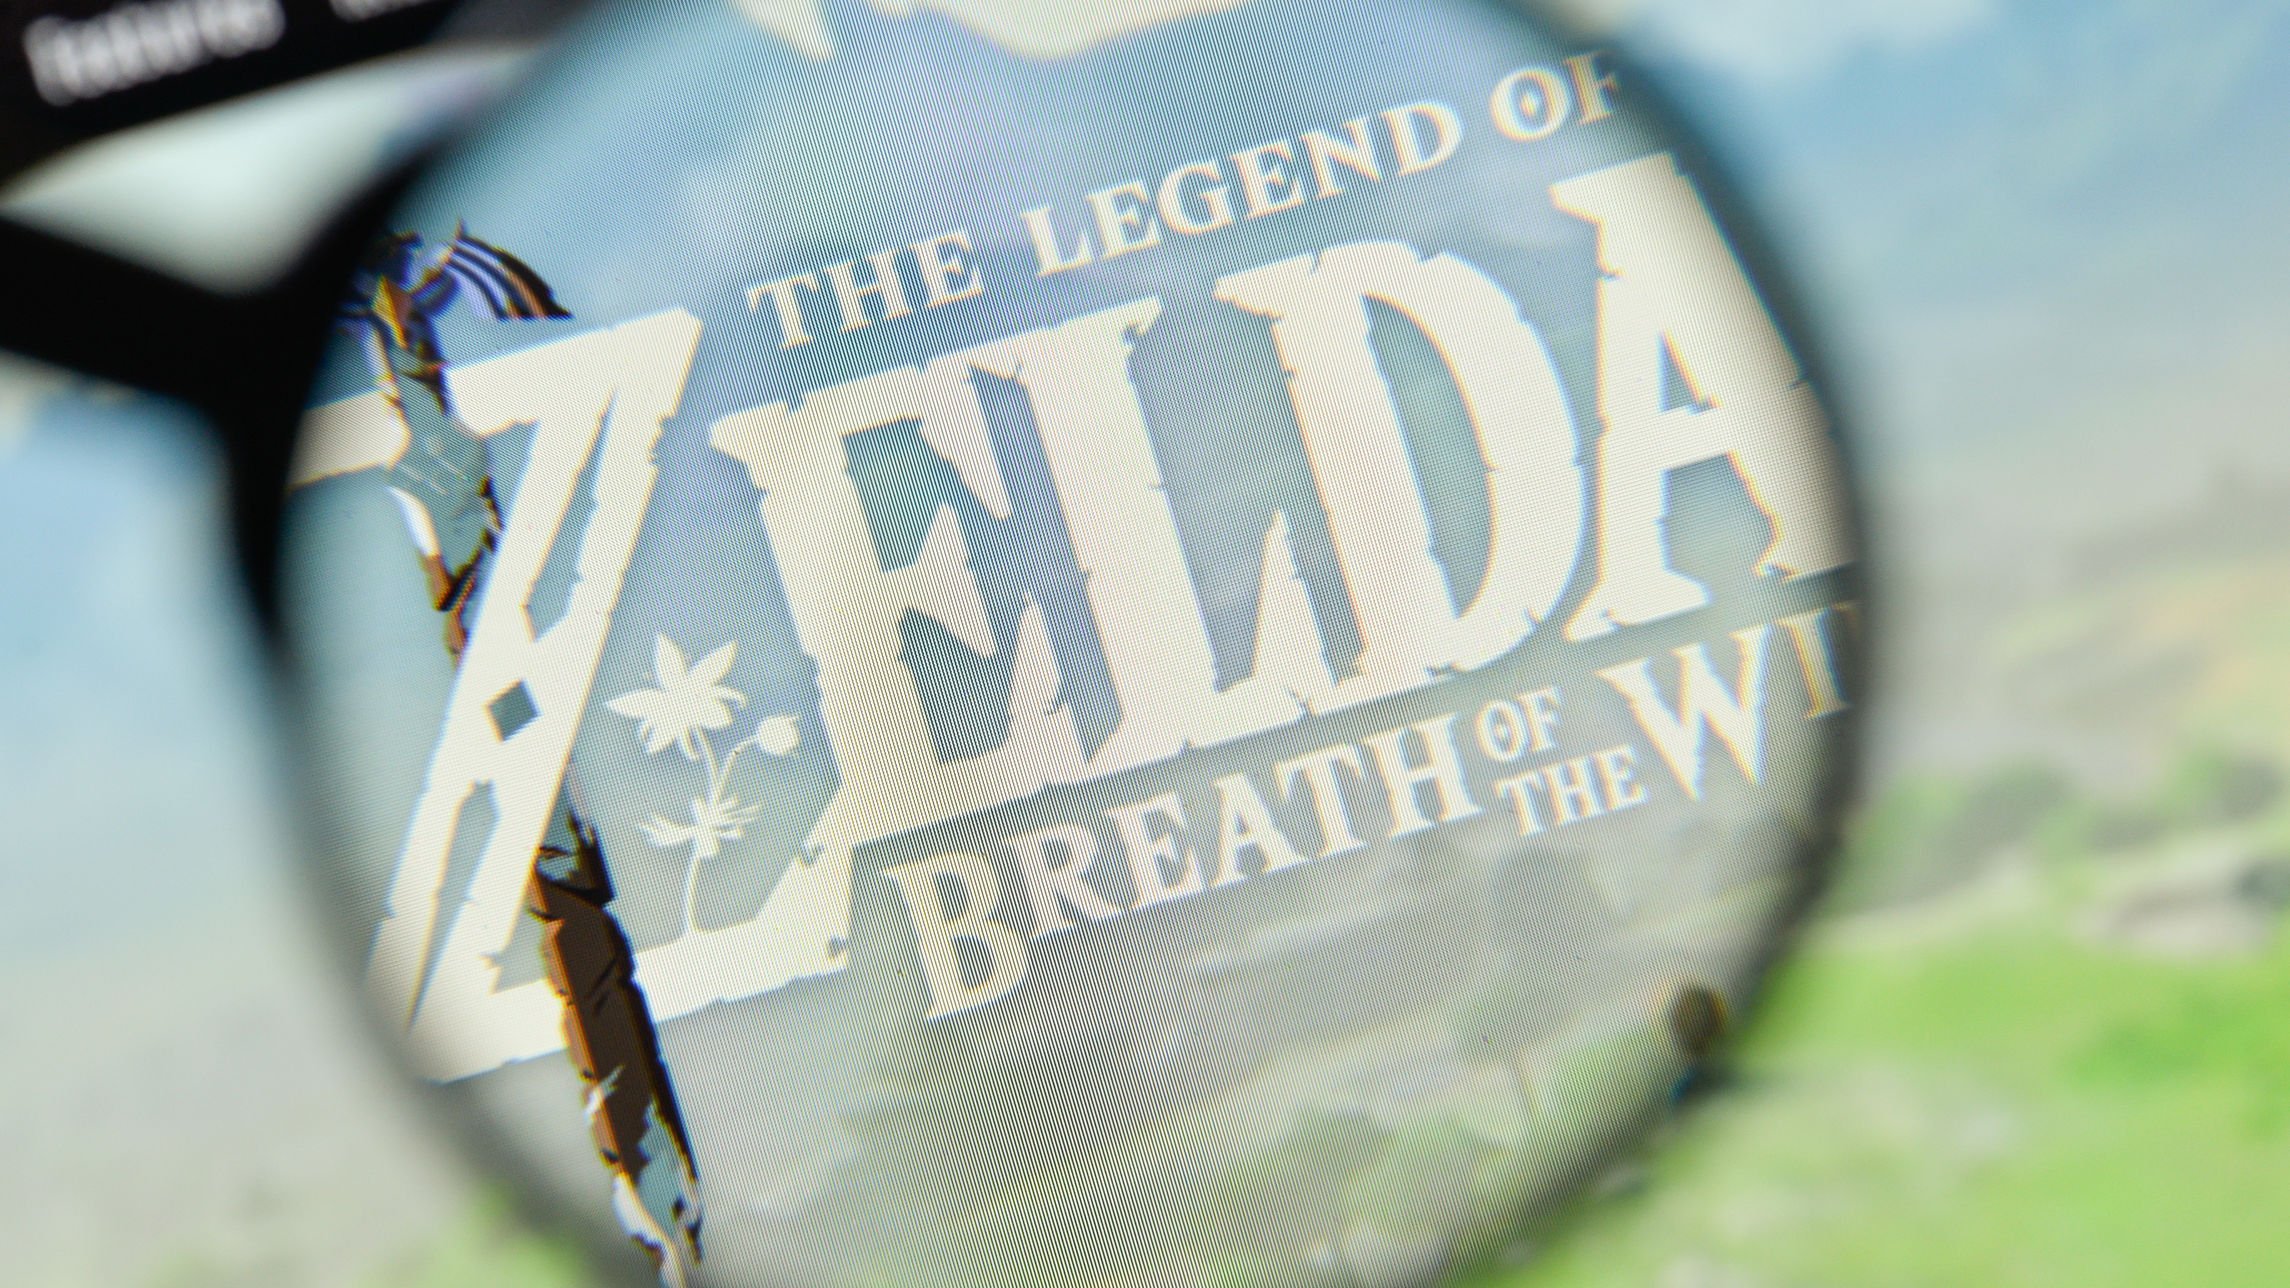 Site do jogo The Legend of Zelda, com uma lupa em cima do logo, deixando ele legível e o resto da página fora de foco.